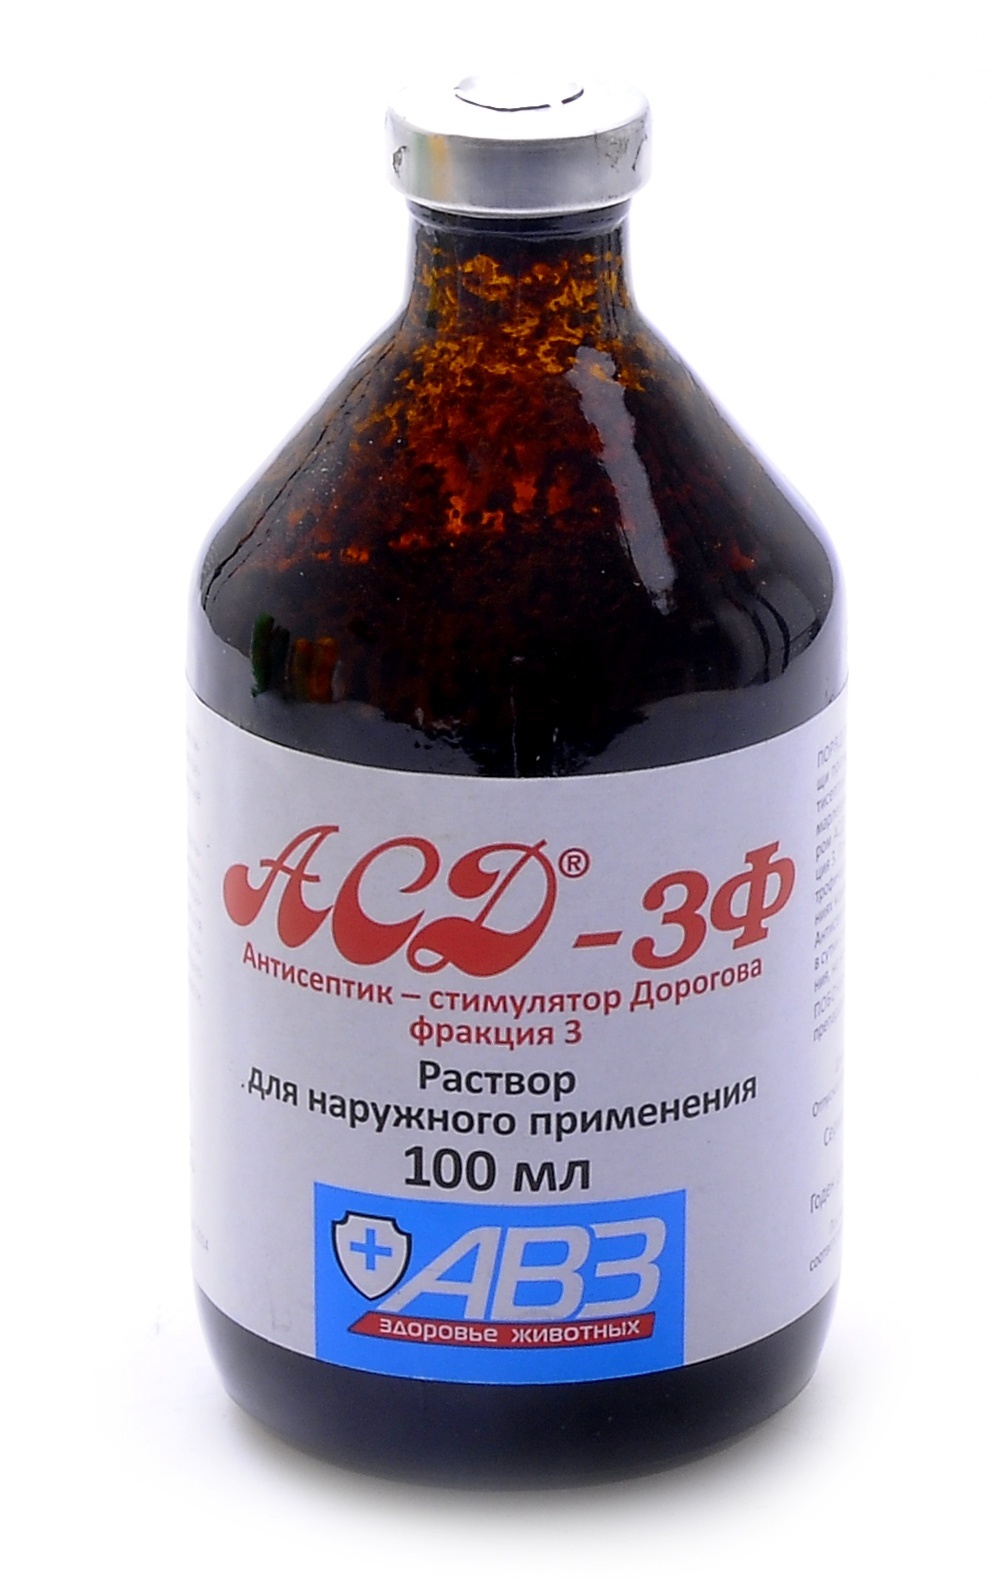 Агроветзащита Агроветзащита аСД-3 - антисептик-стимулятор Дорогова, фракция 3 (100 г) препарат авз асд 3 фракция флакон 1 антисептик 100мл